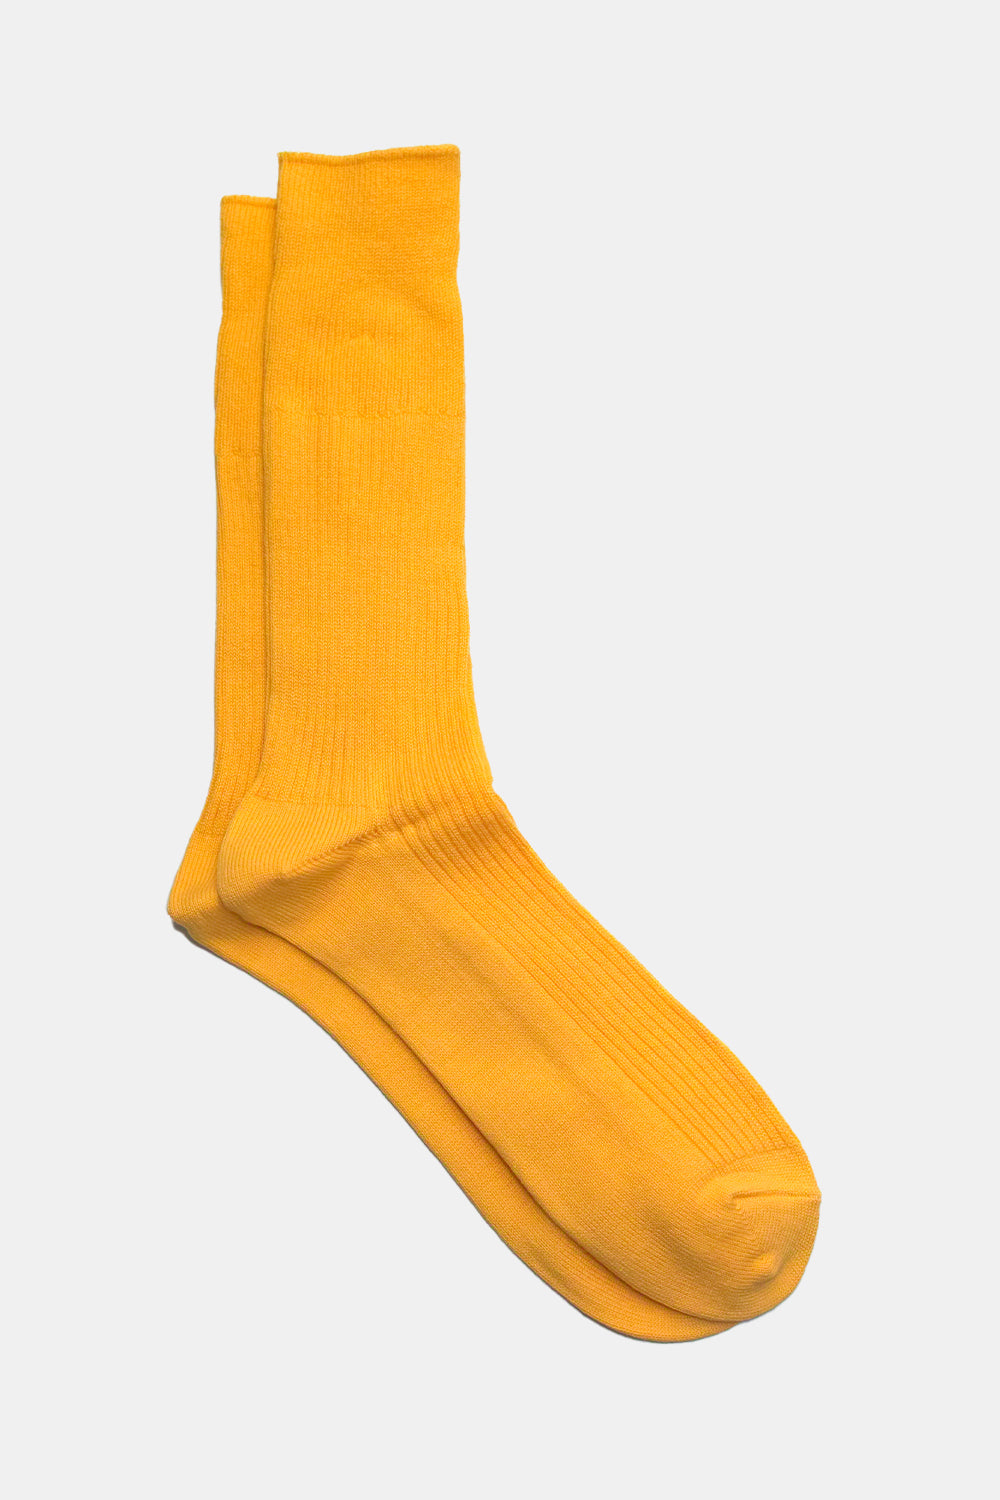 Anonymous Ism Brilliant Crew Socks (Yellow)